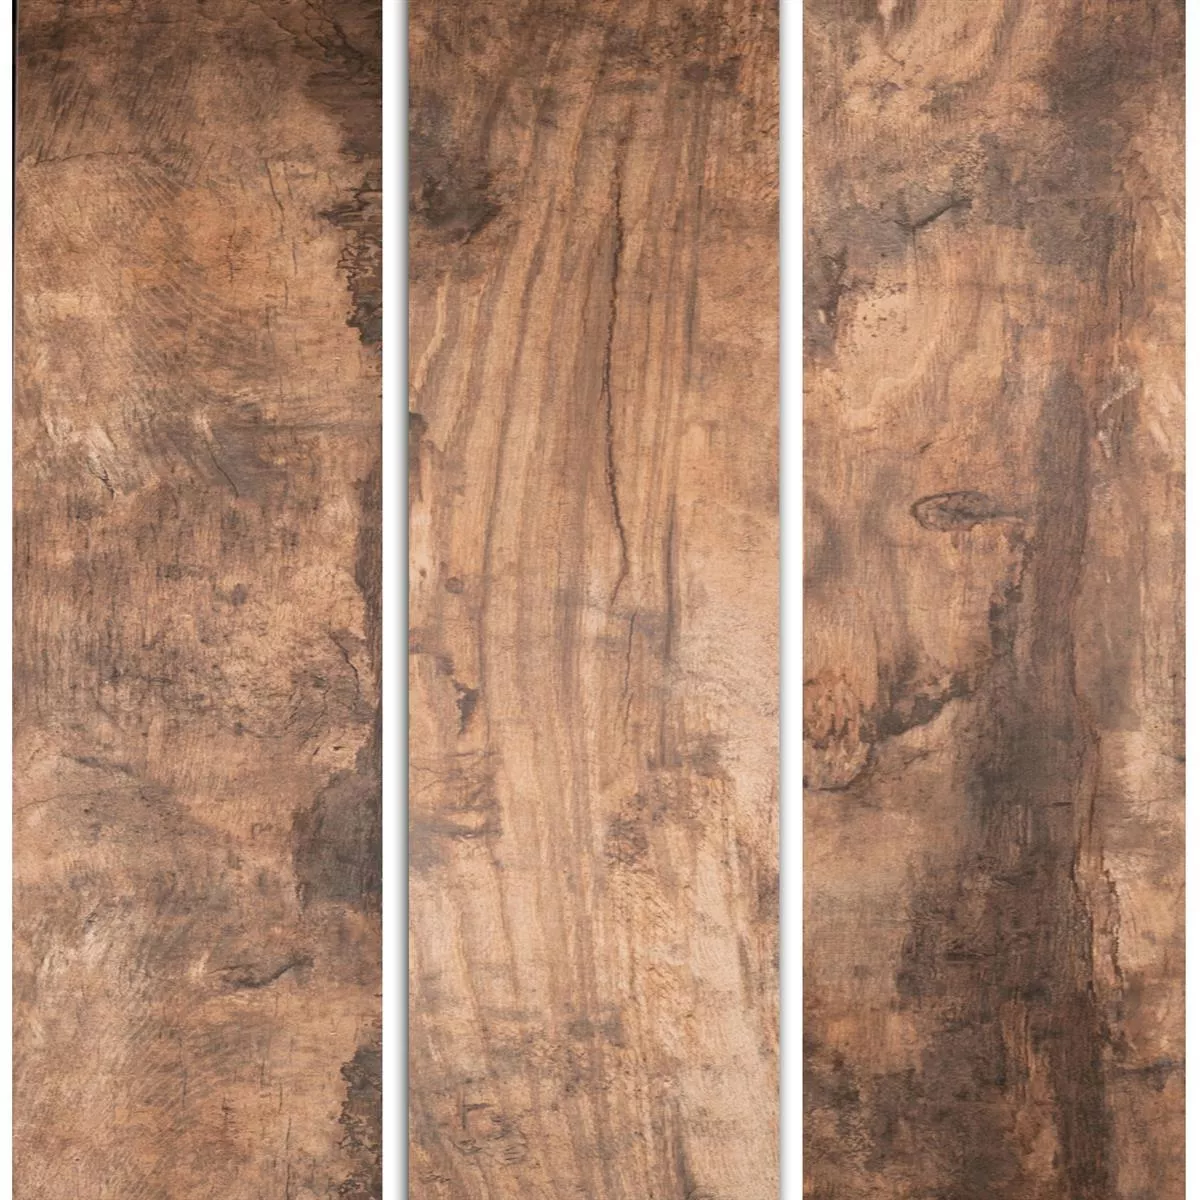 Sample Floor Tiles Wood Optic Global Brown 20x180cm